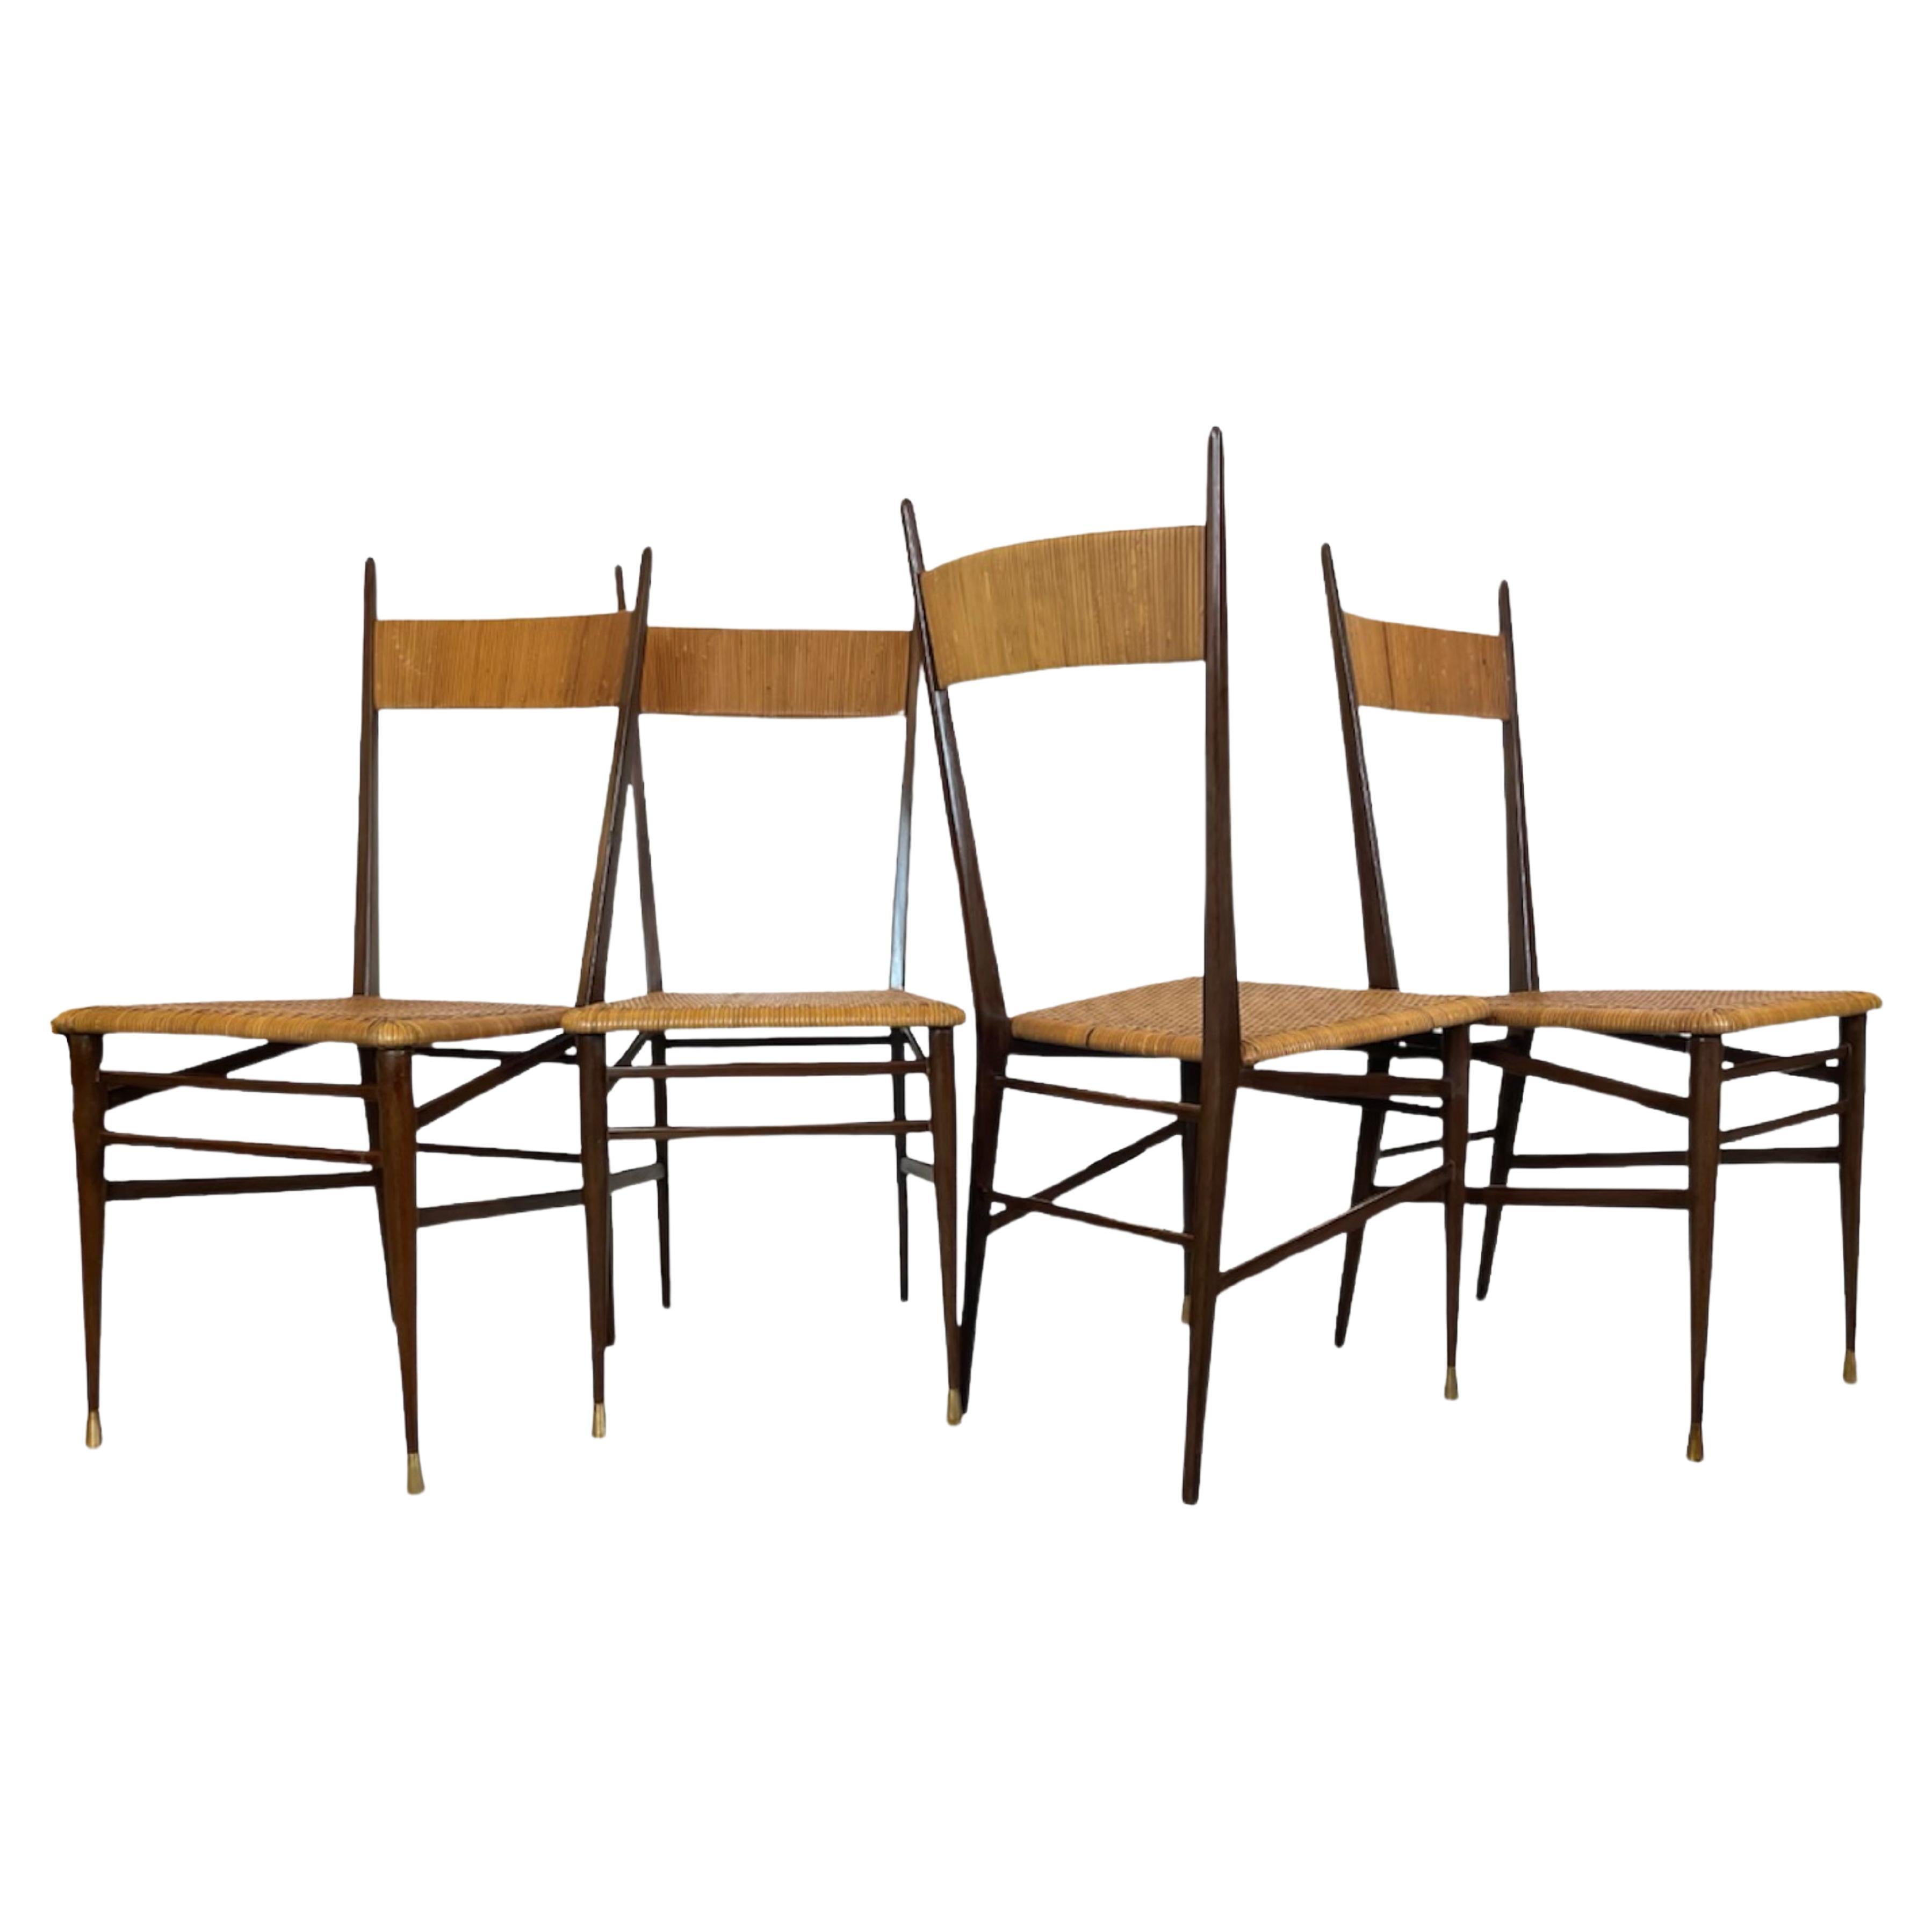 Satz von vier italienischen Designstühlen, Scuola di Torino, ca. 1950er Jahre.
4 traditionelle italienische Chiavari , nach dem Vorbild von Gio Ponti und Superleggera.
Der Rahmen ist aus Massivholz, die Sitze und Rückenlehnen aus geflochtenem